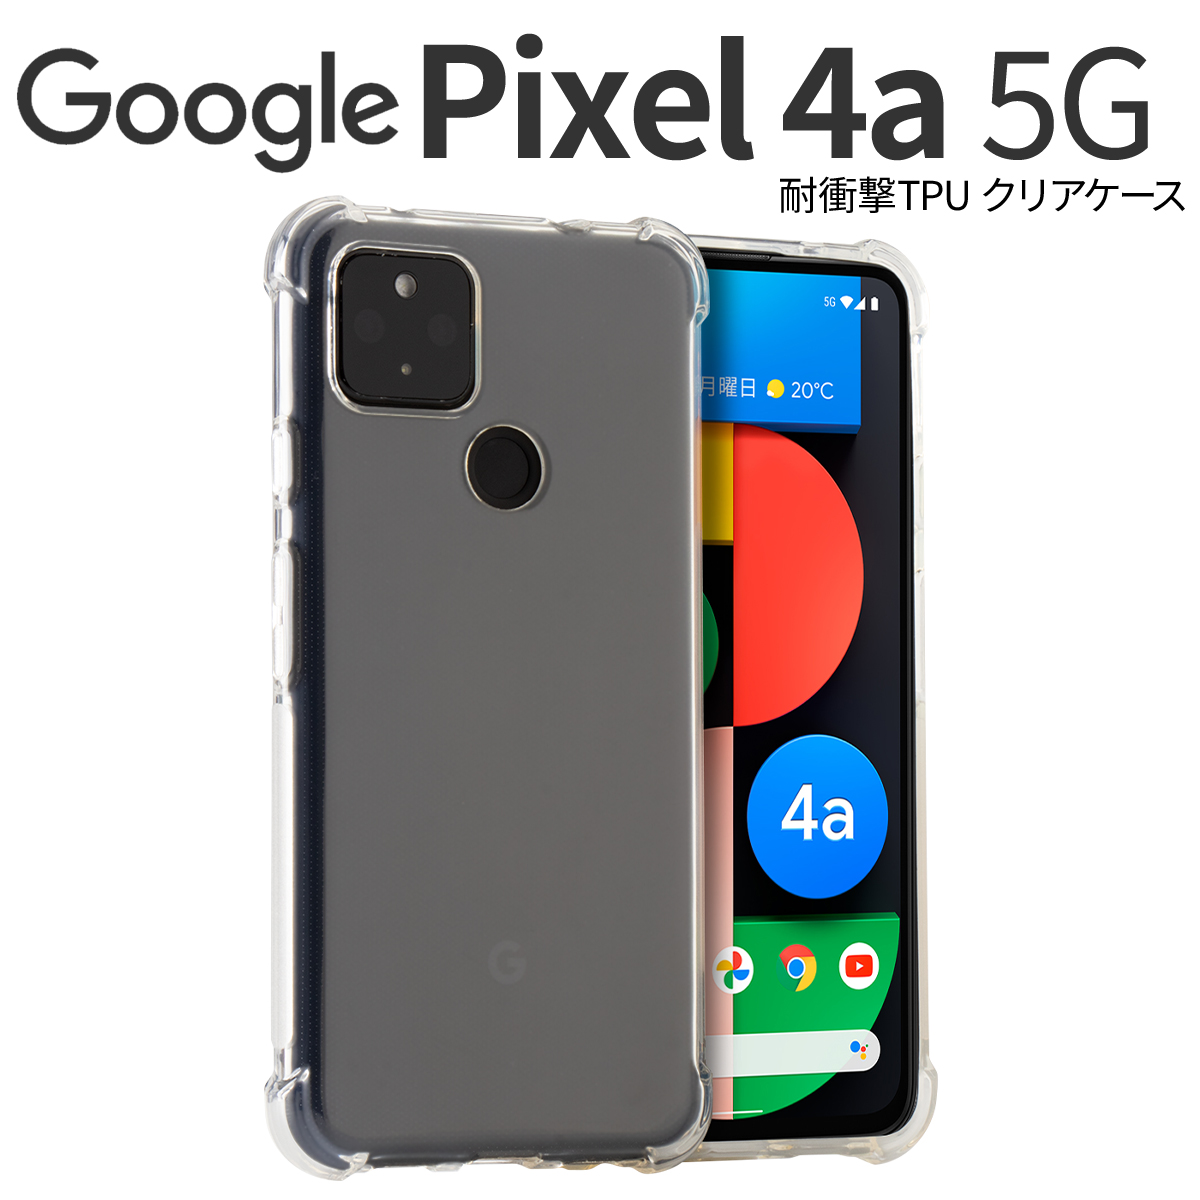 耐衝撃TPUクリアケース セール品 数量限定!特売 Pixel 5G 4a